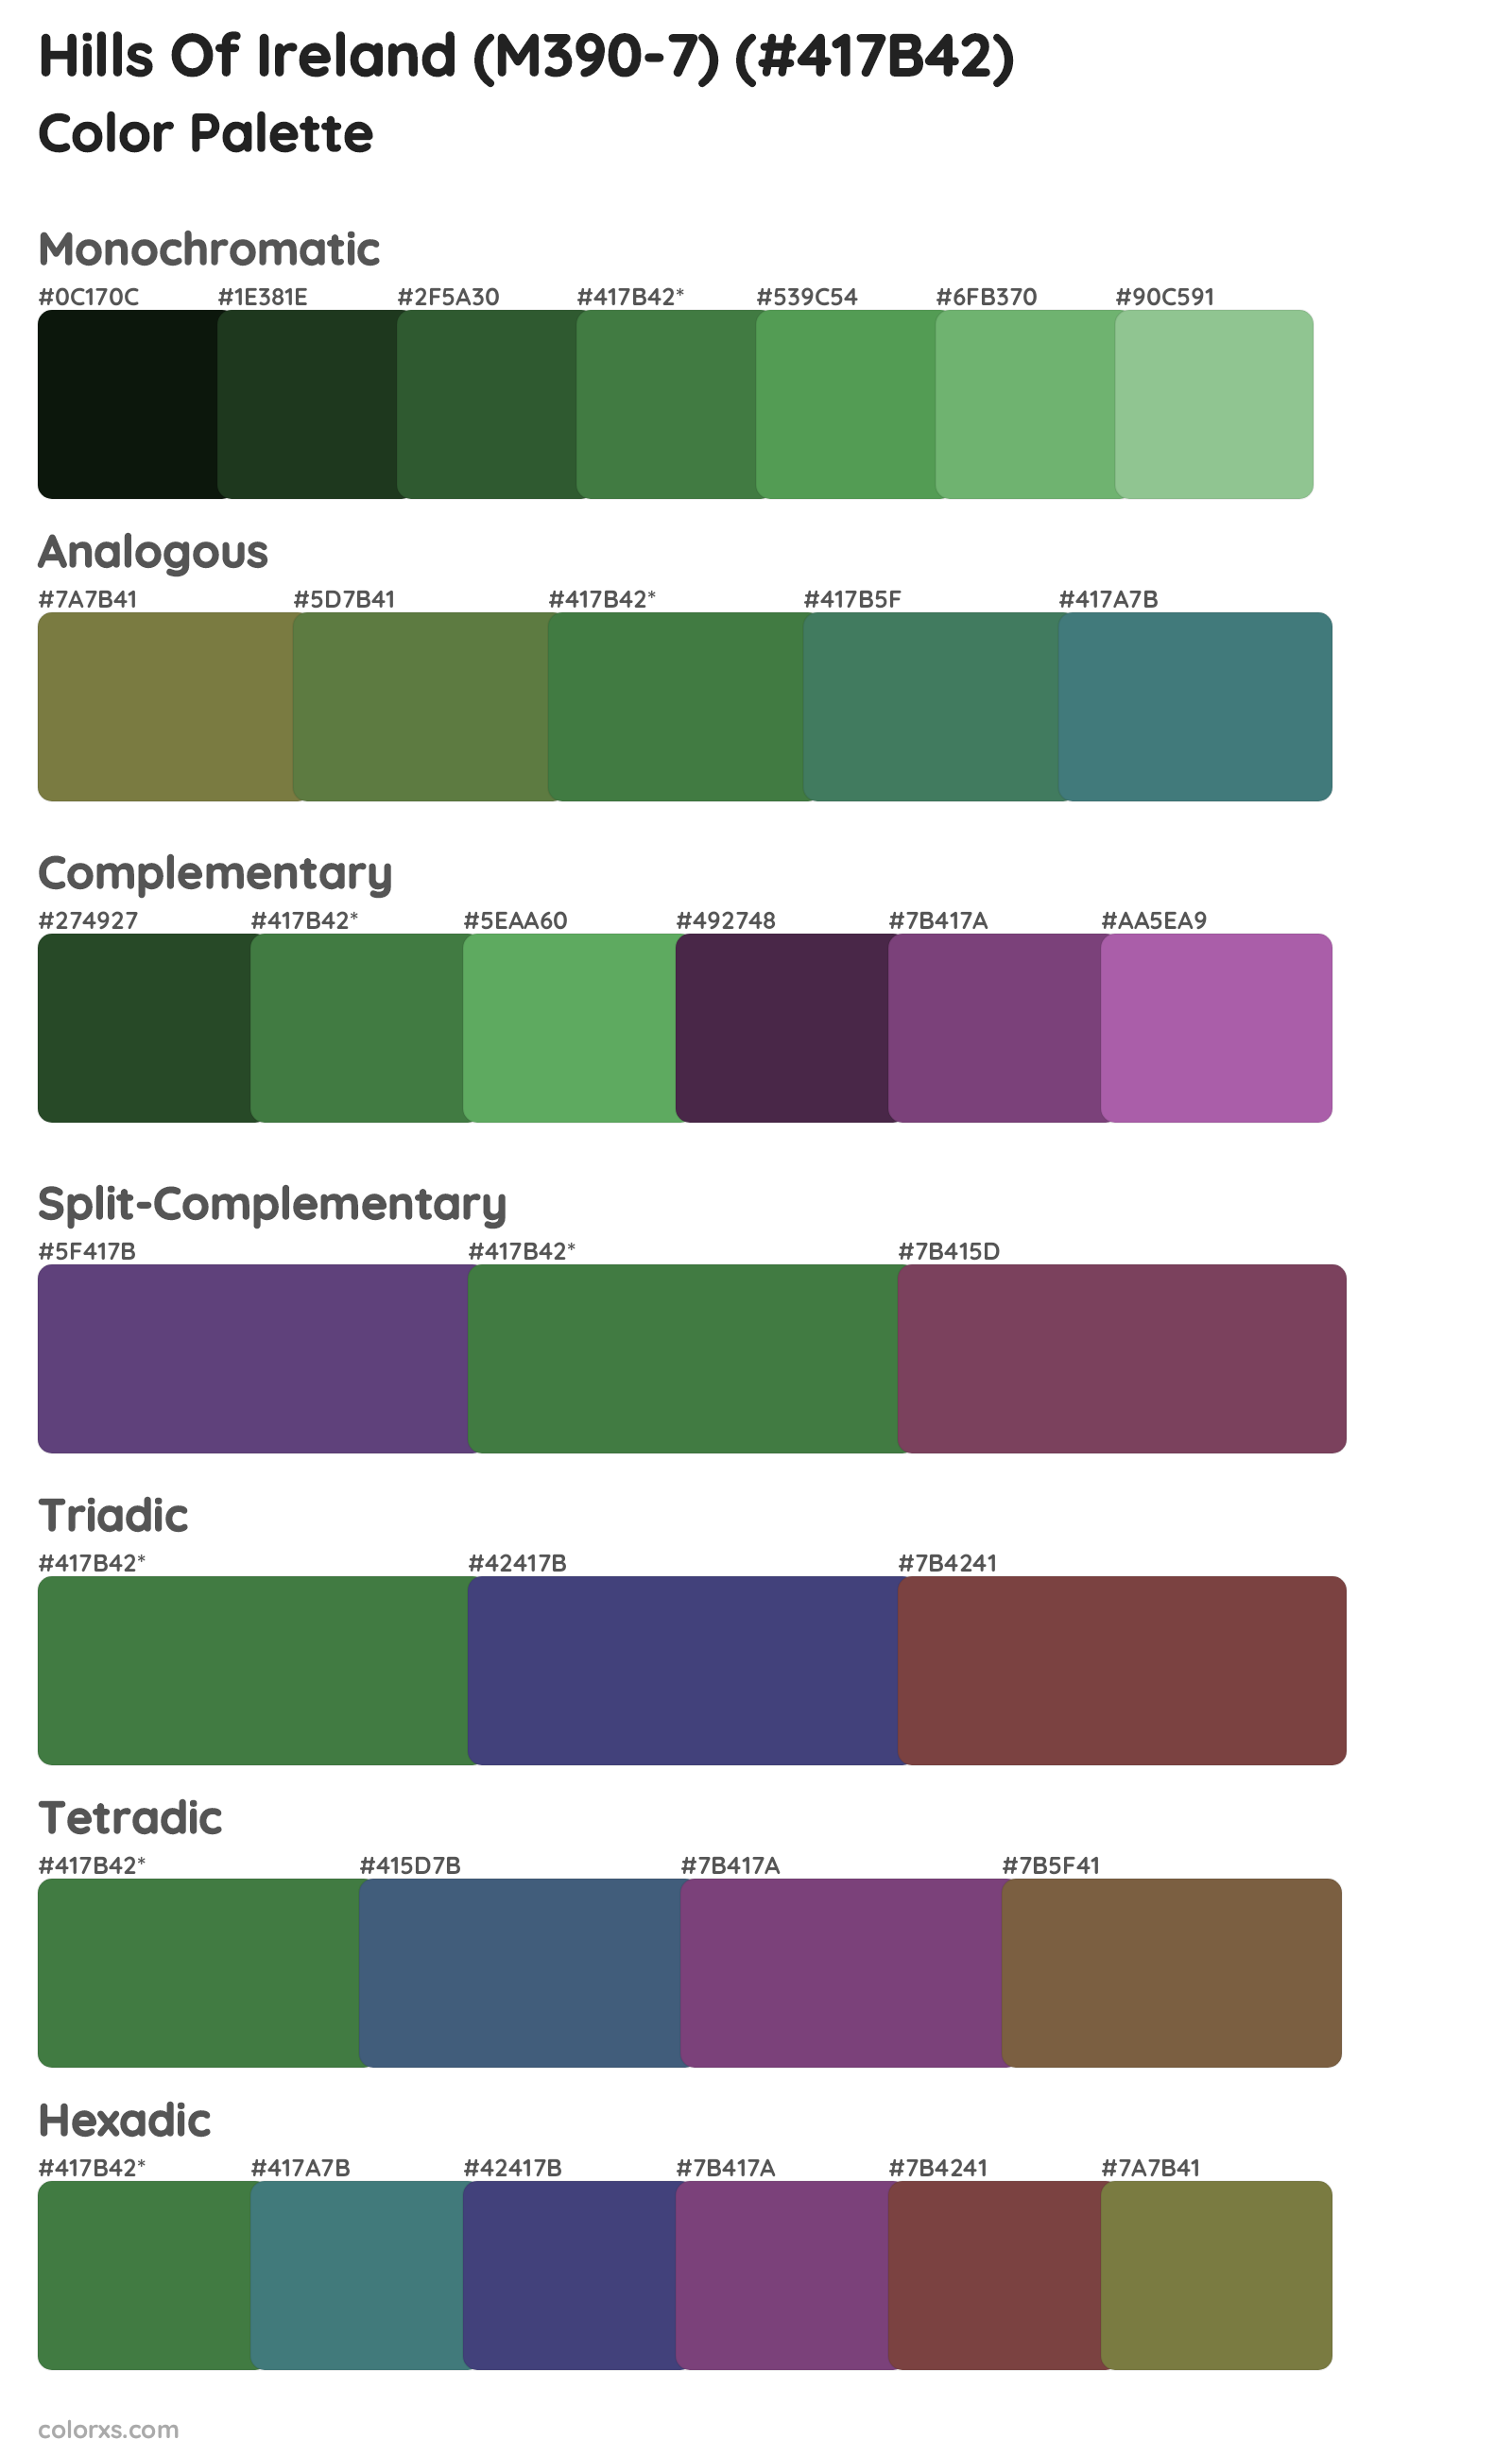 Hills Of Ireland (M390-7) Color Scheme Palettes